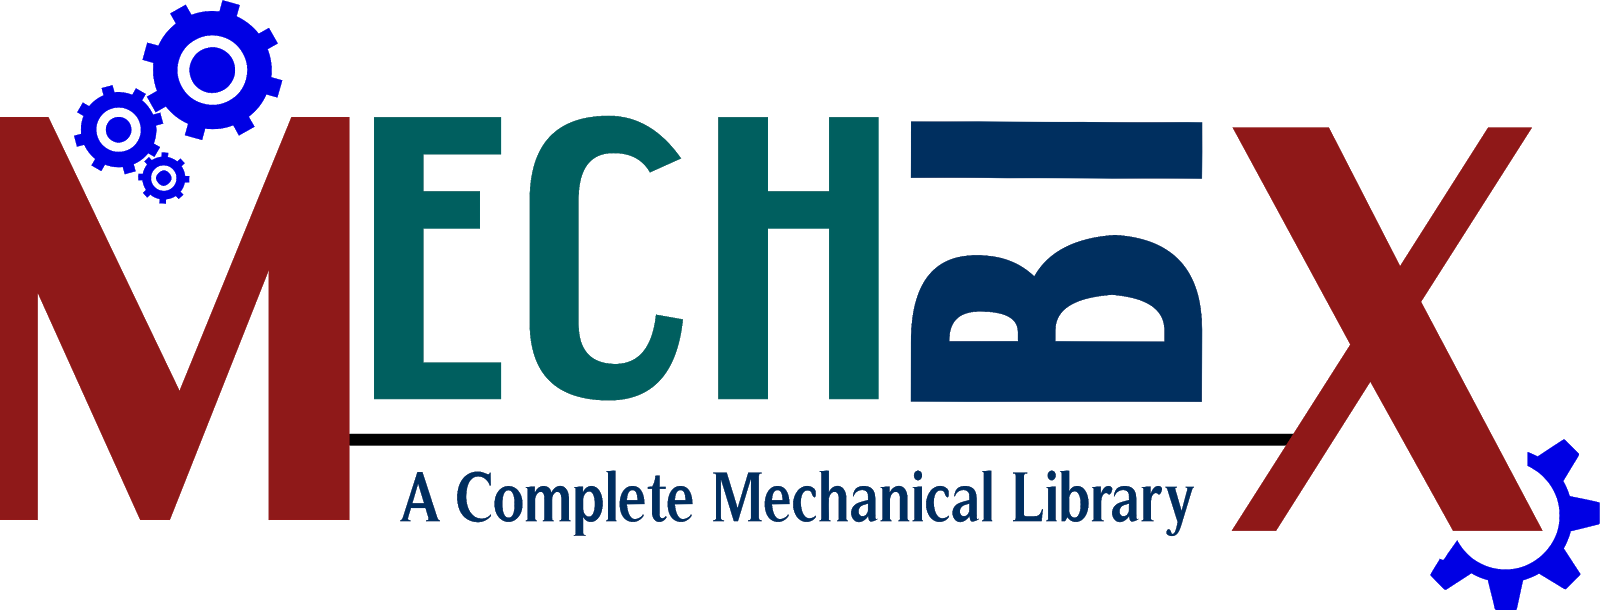 MechBix - A Complete Mechanical Library 